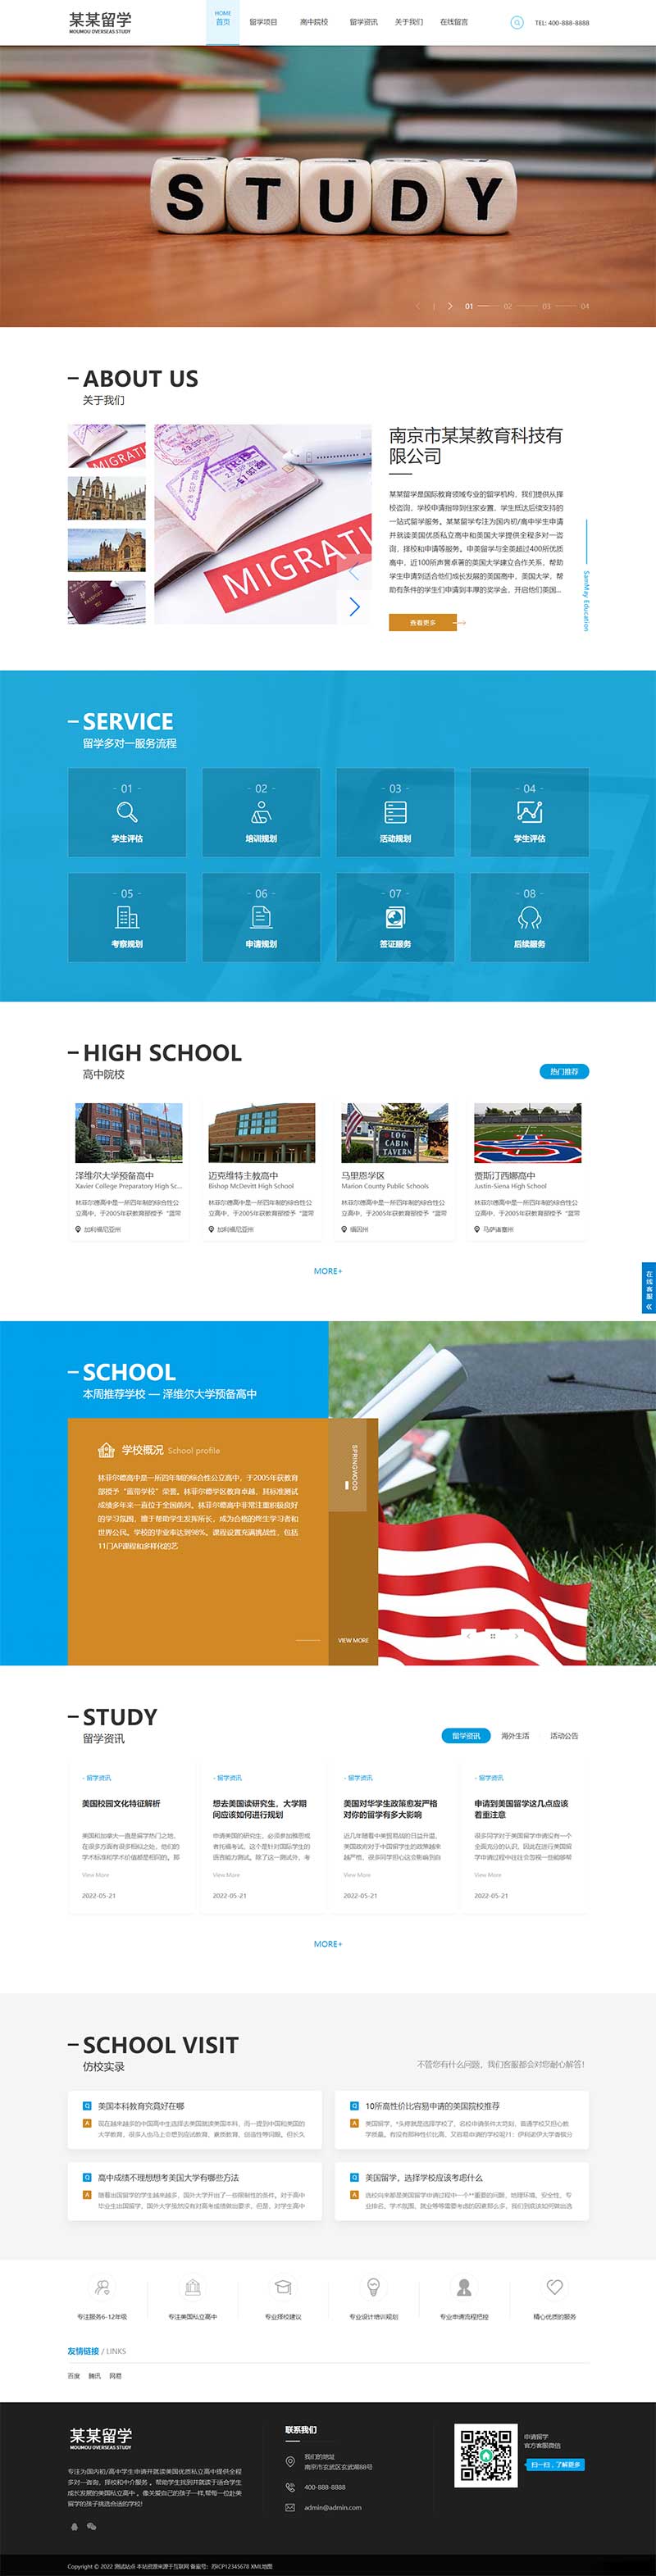 (自适应移动端)html5响应式精美大气留学教育服务公司网站电脑端模板展示图片